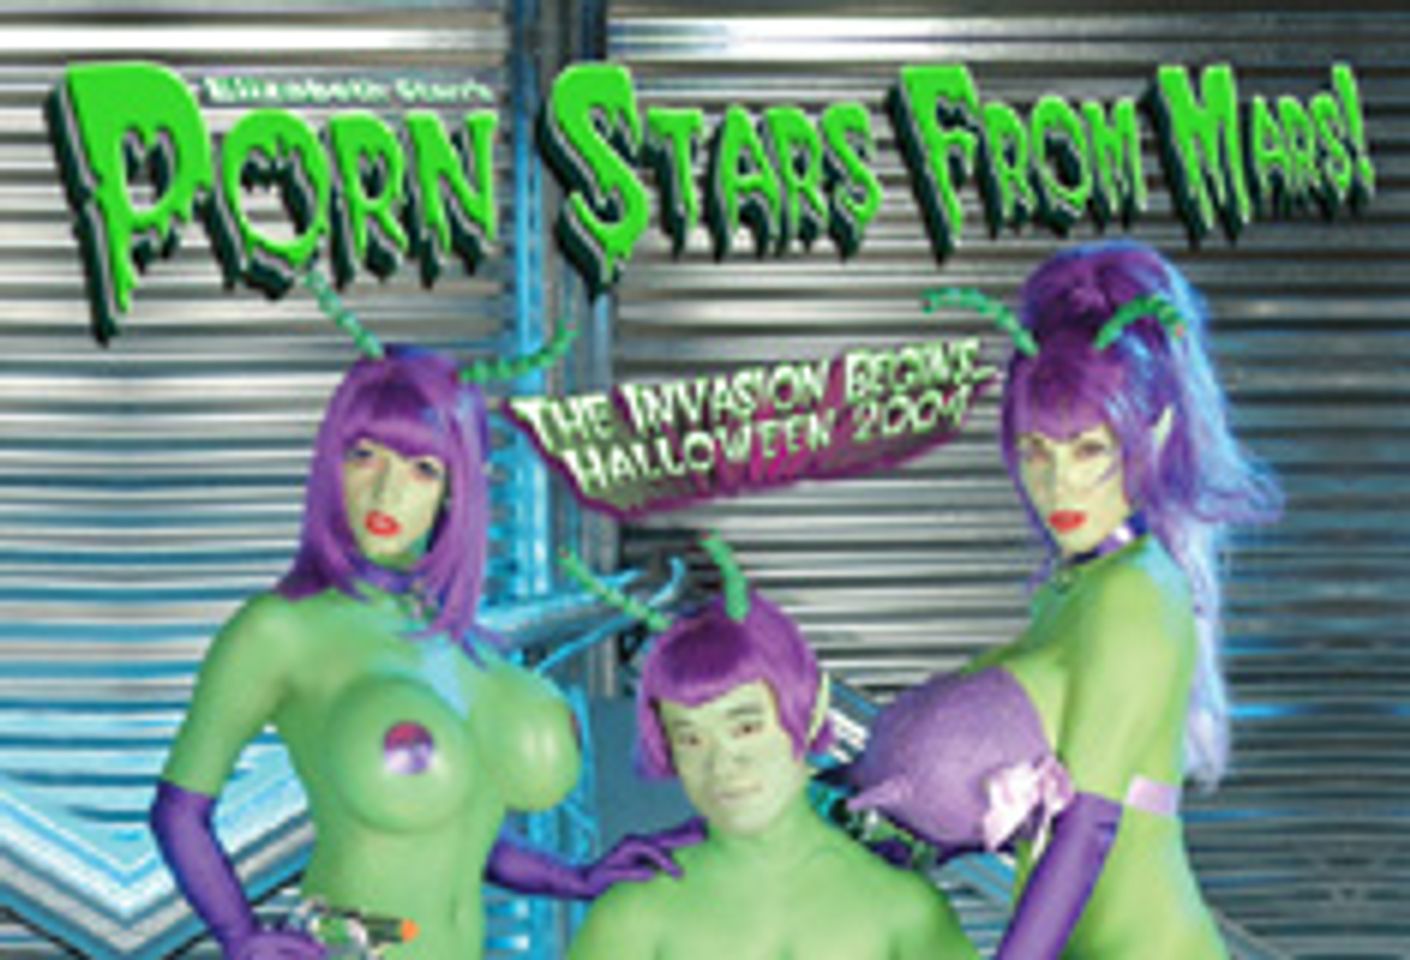 Starr Productions Presents Martian-Themed Big Breast Porn